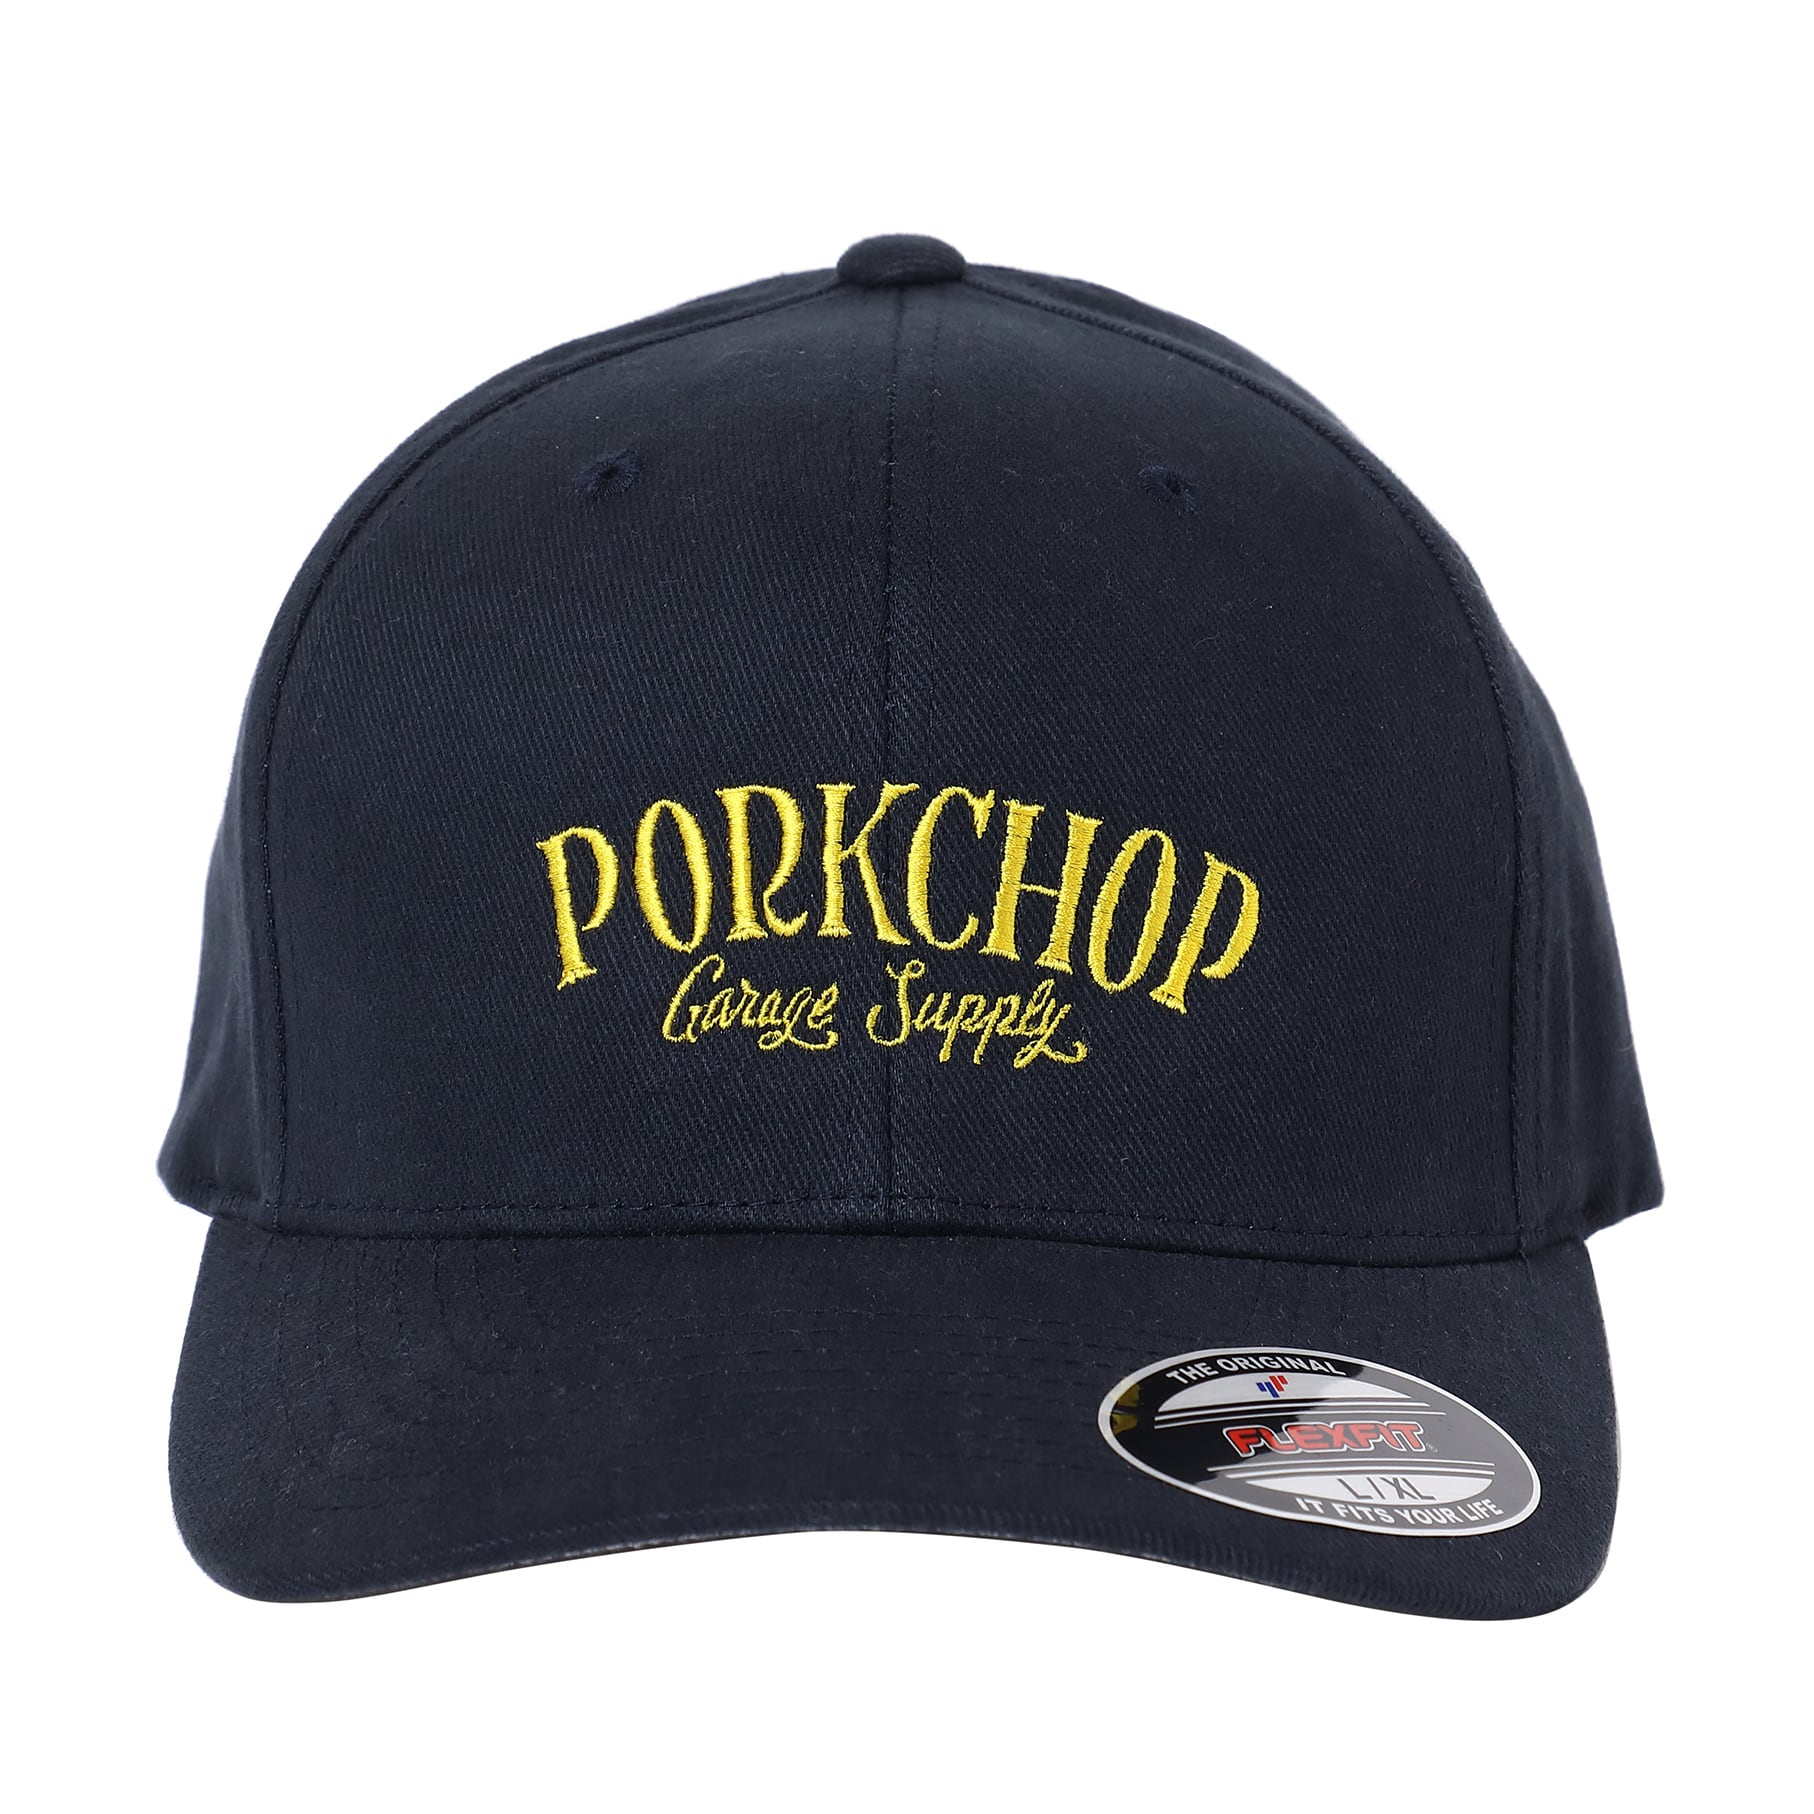 PORKCHOP GARAGE SUPPLY STITCH LOGO CAP